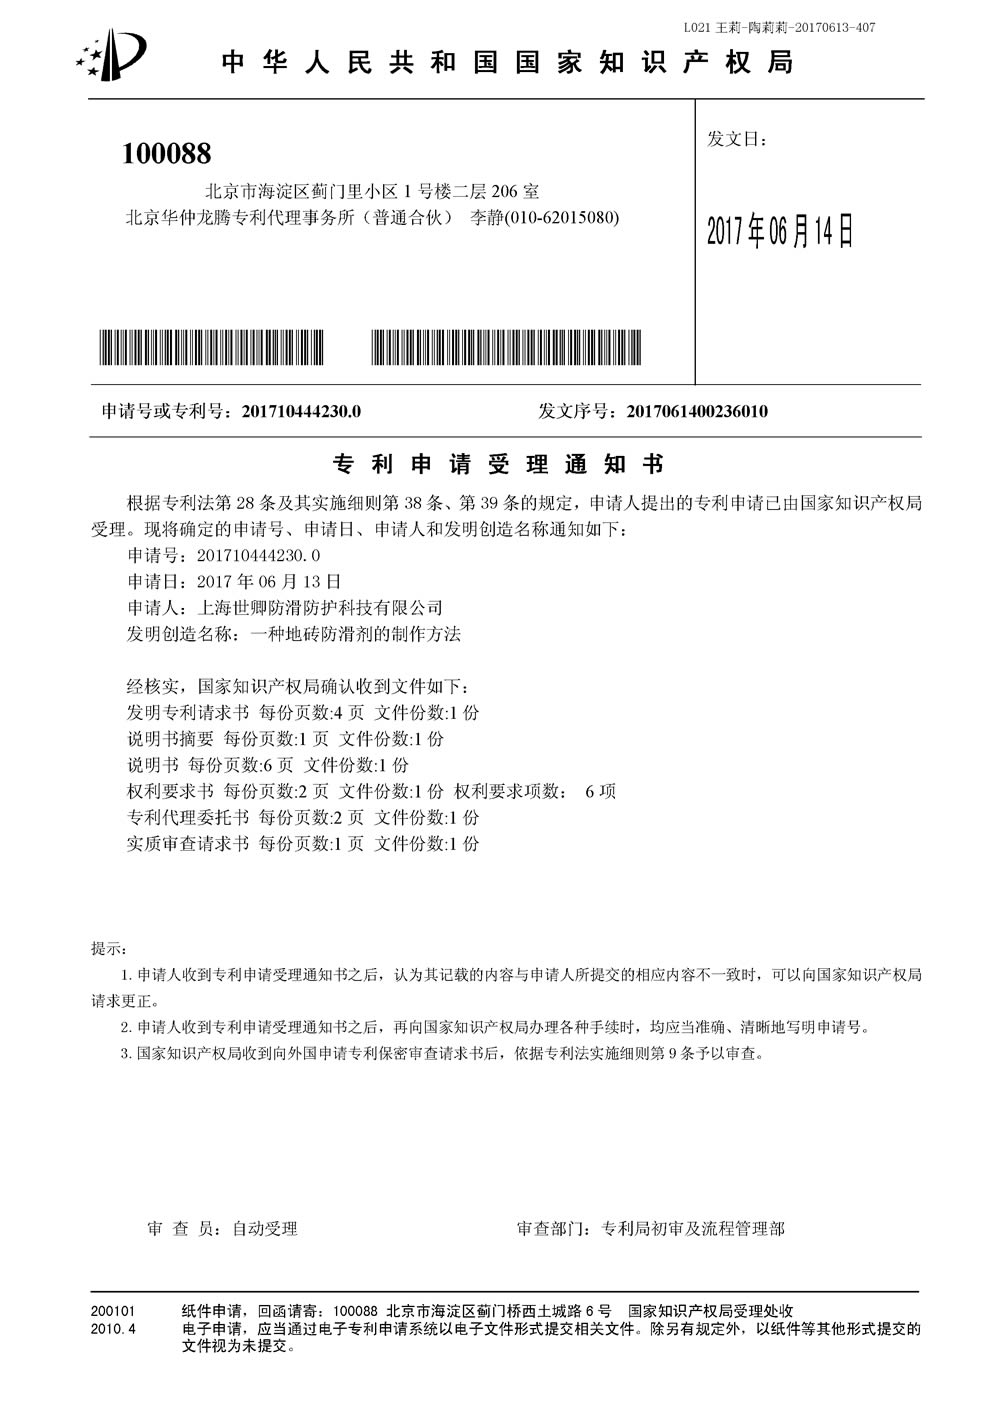 上海我司防滑液发明专利审查合格证书